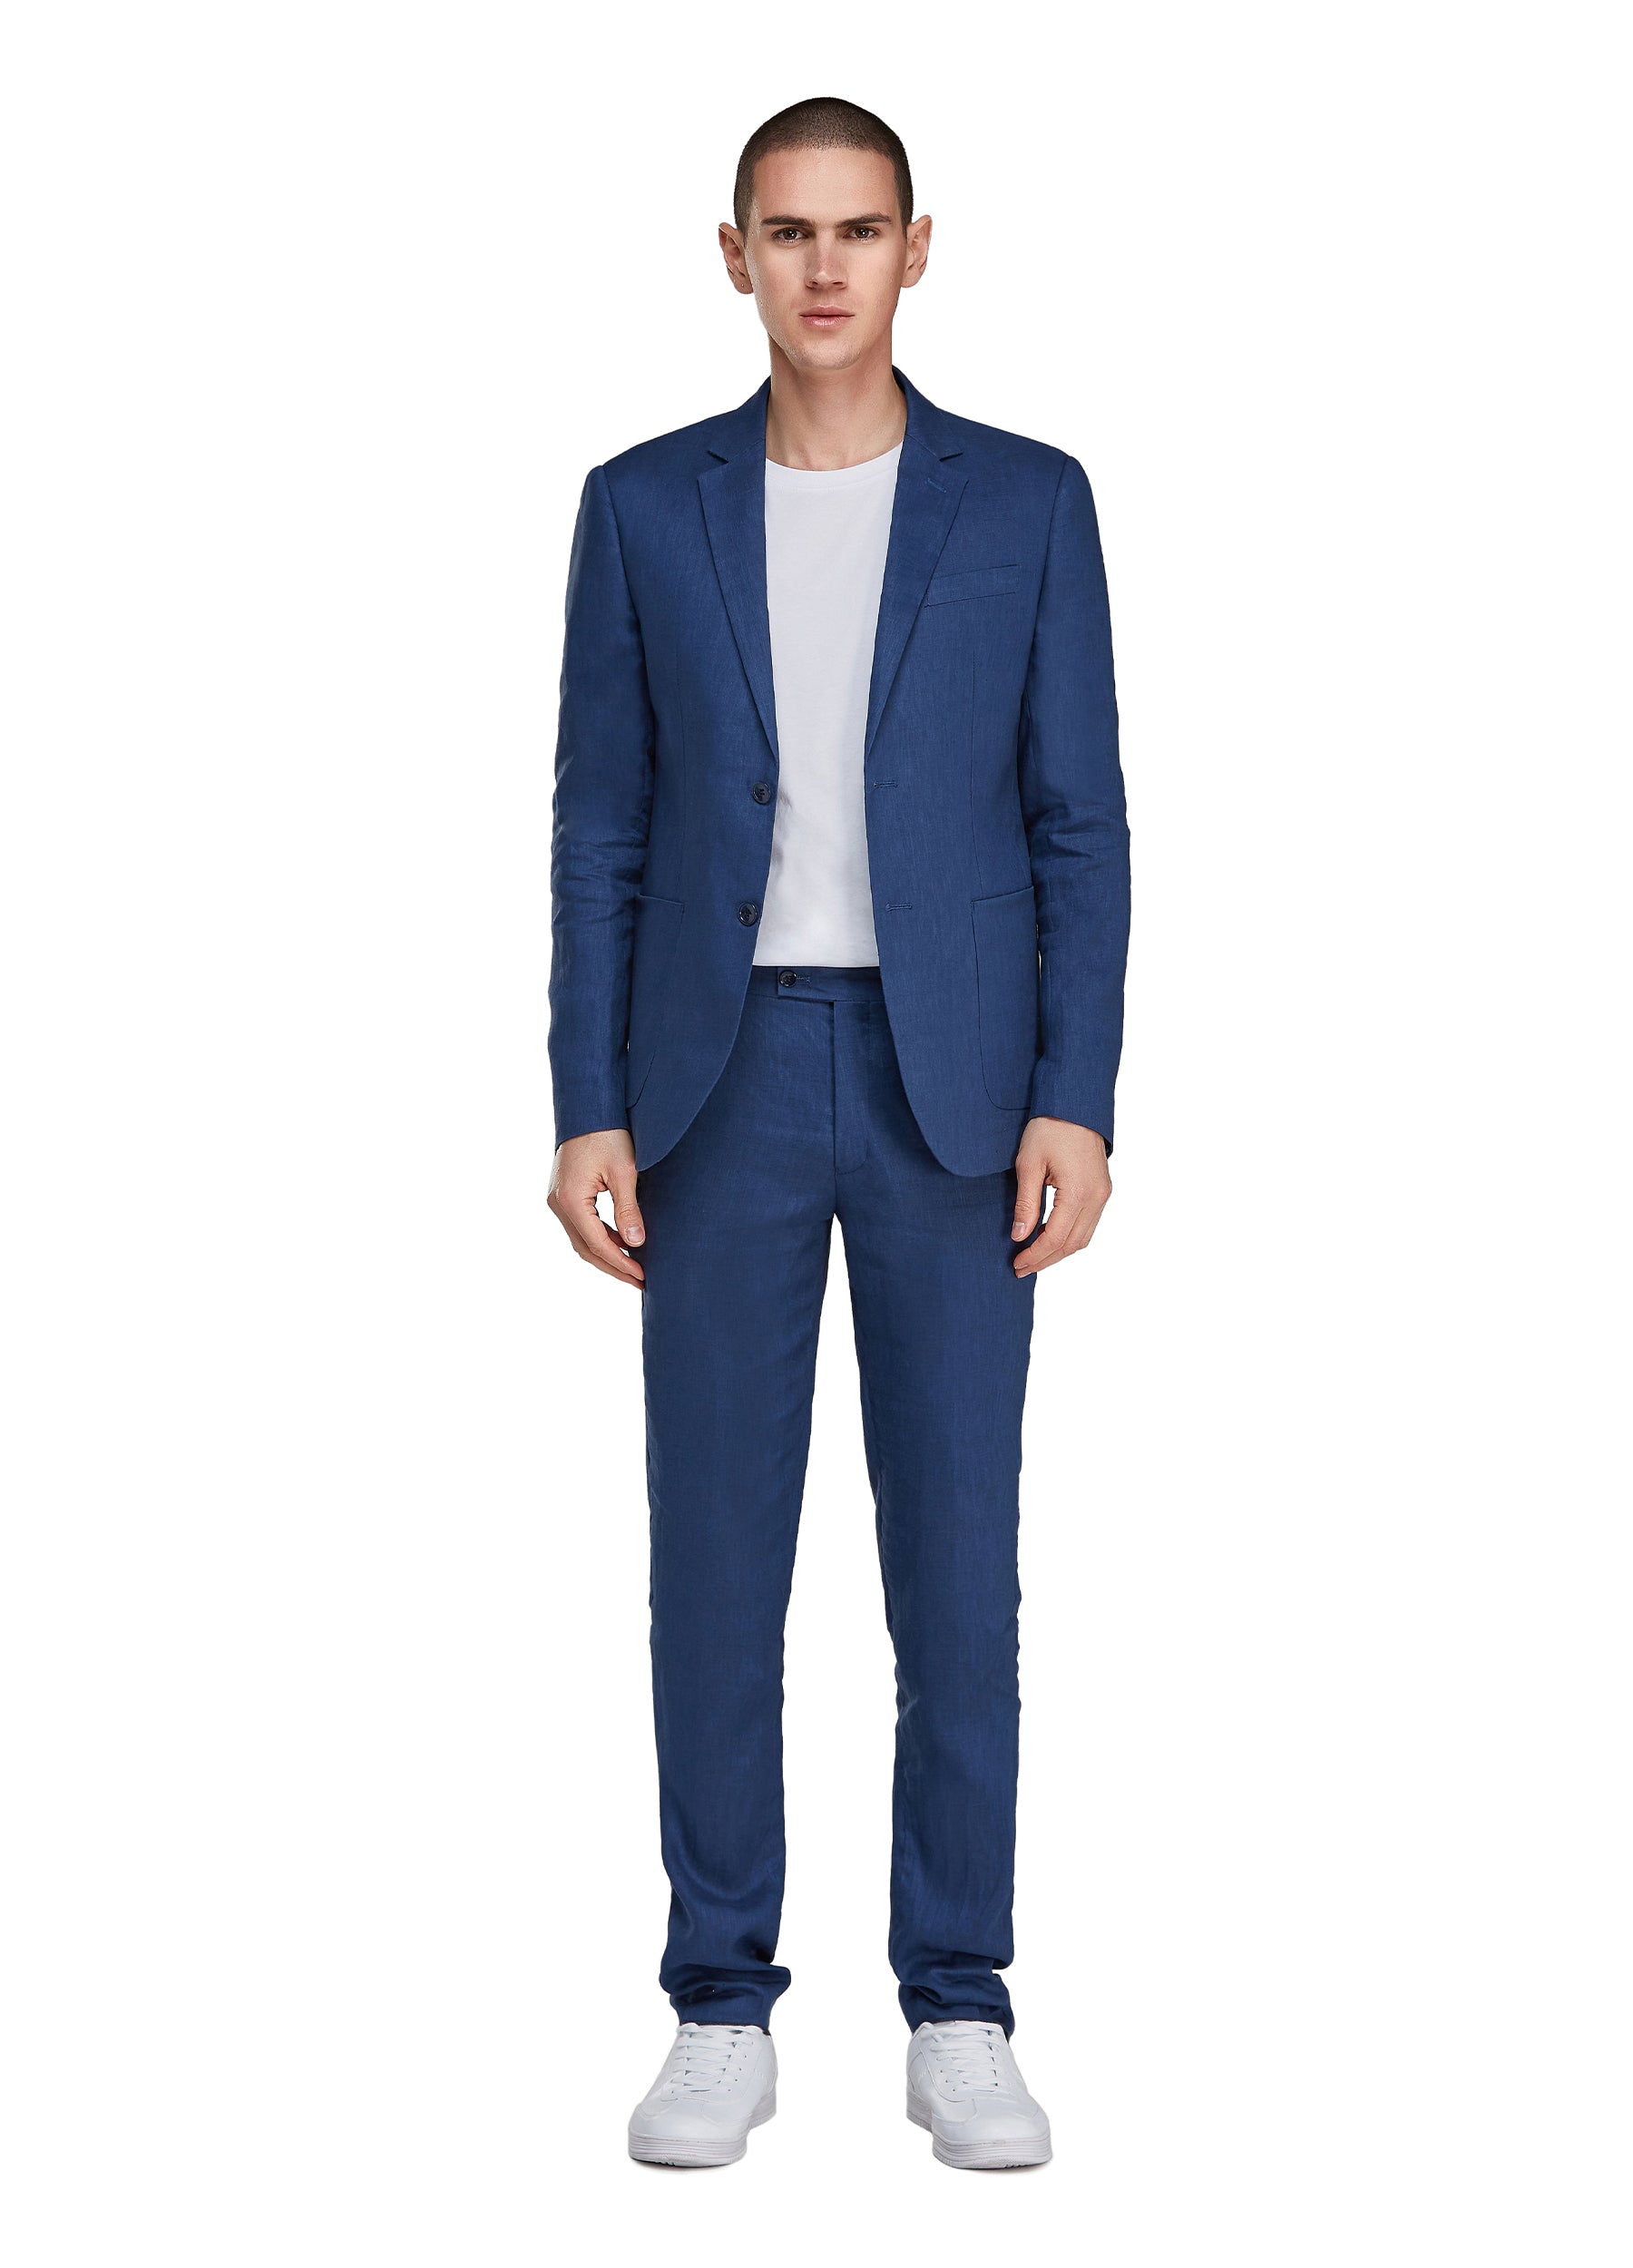 1PA1 Men's 100% Linen Dark Blue Jacket Trousers 2-Pieces Suit Set